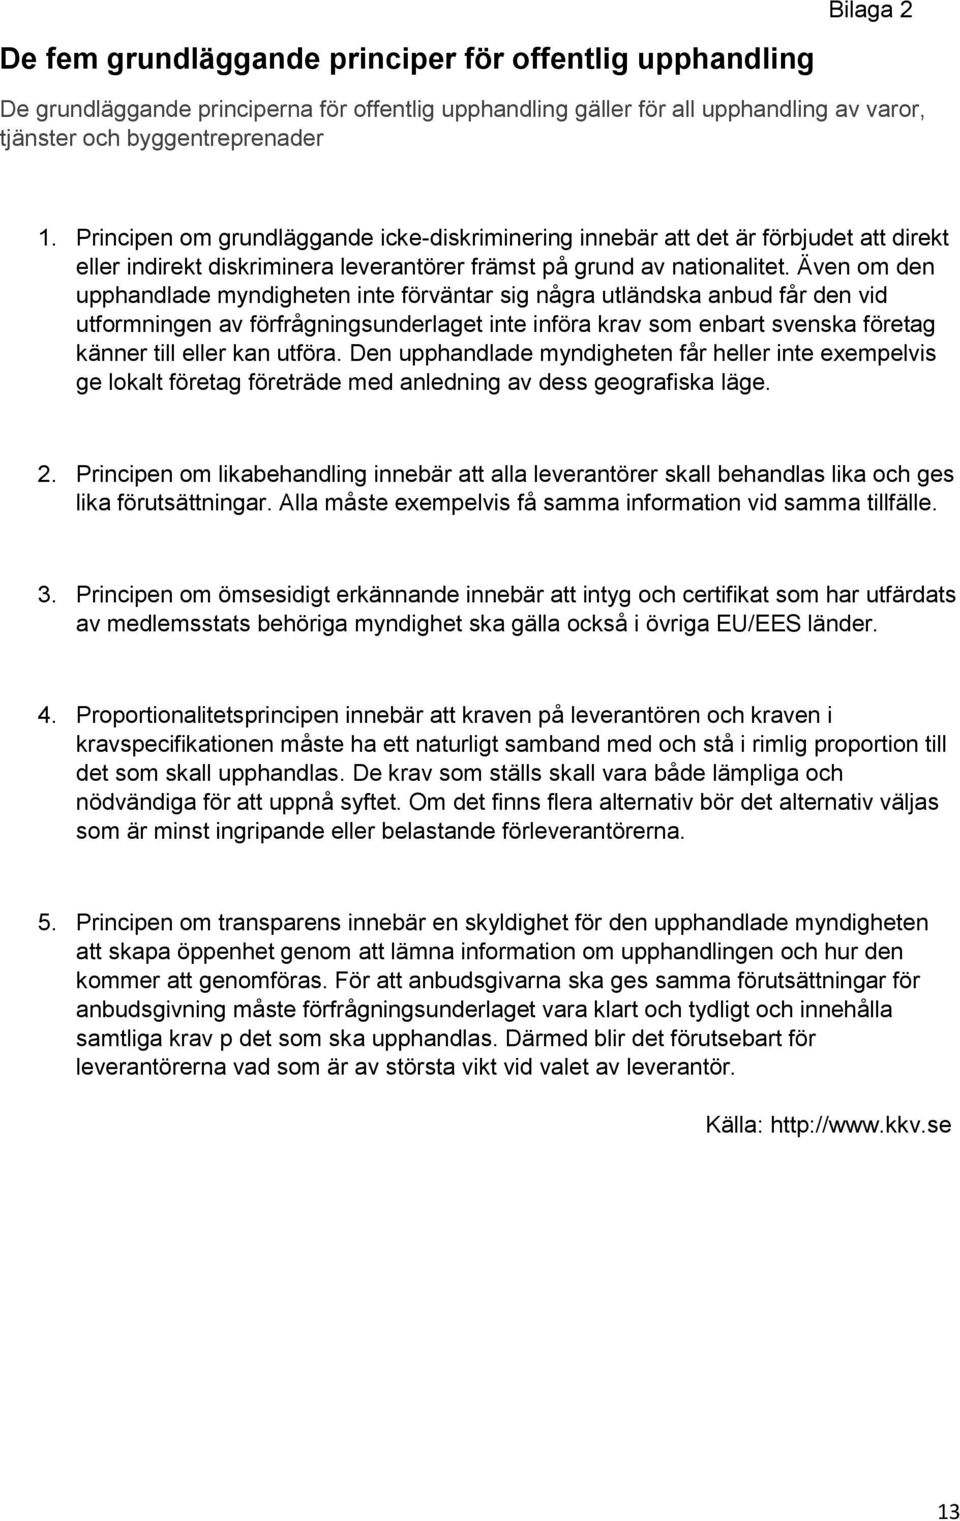 Även om den upphandlade myndigheten inte förväntar sig några utländska anbud får den vid utformningen av förfrågningsunderlaget inte införa krav som enbart svenska företag känner till eller kan